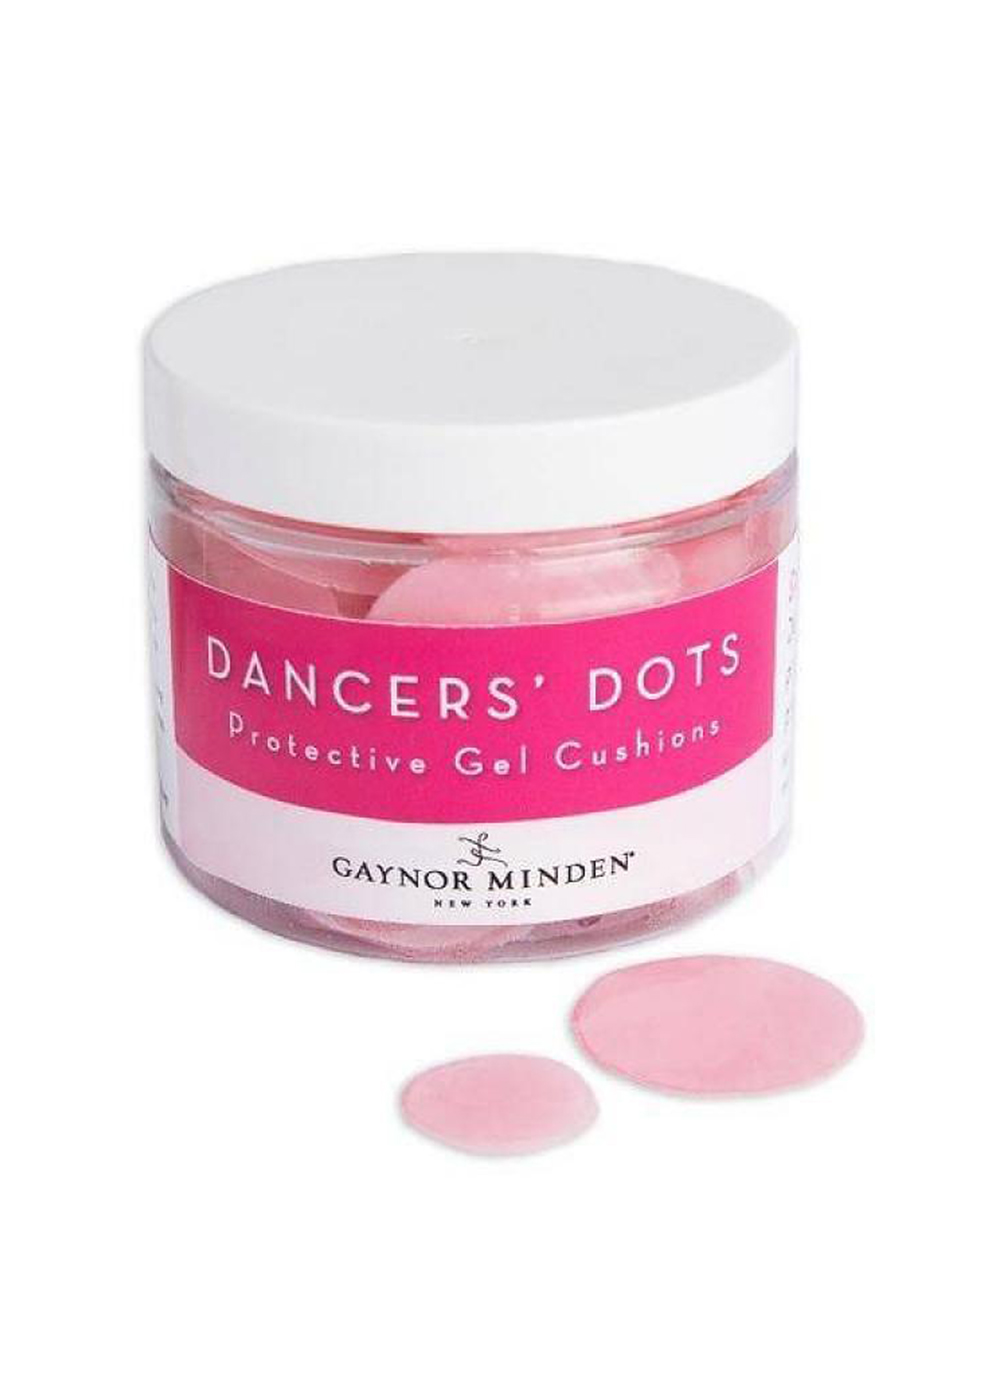 Dancers' Dots GAYNOR MINDEN